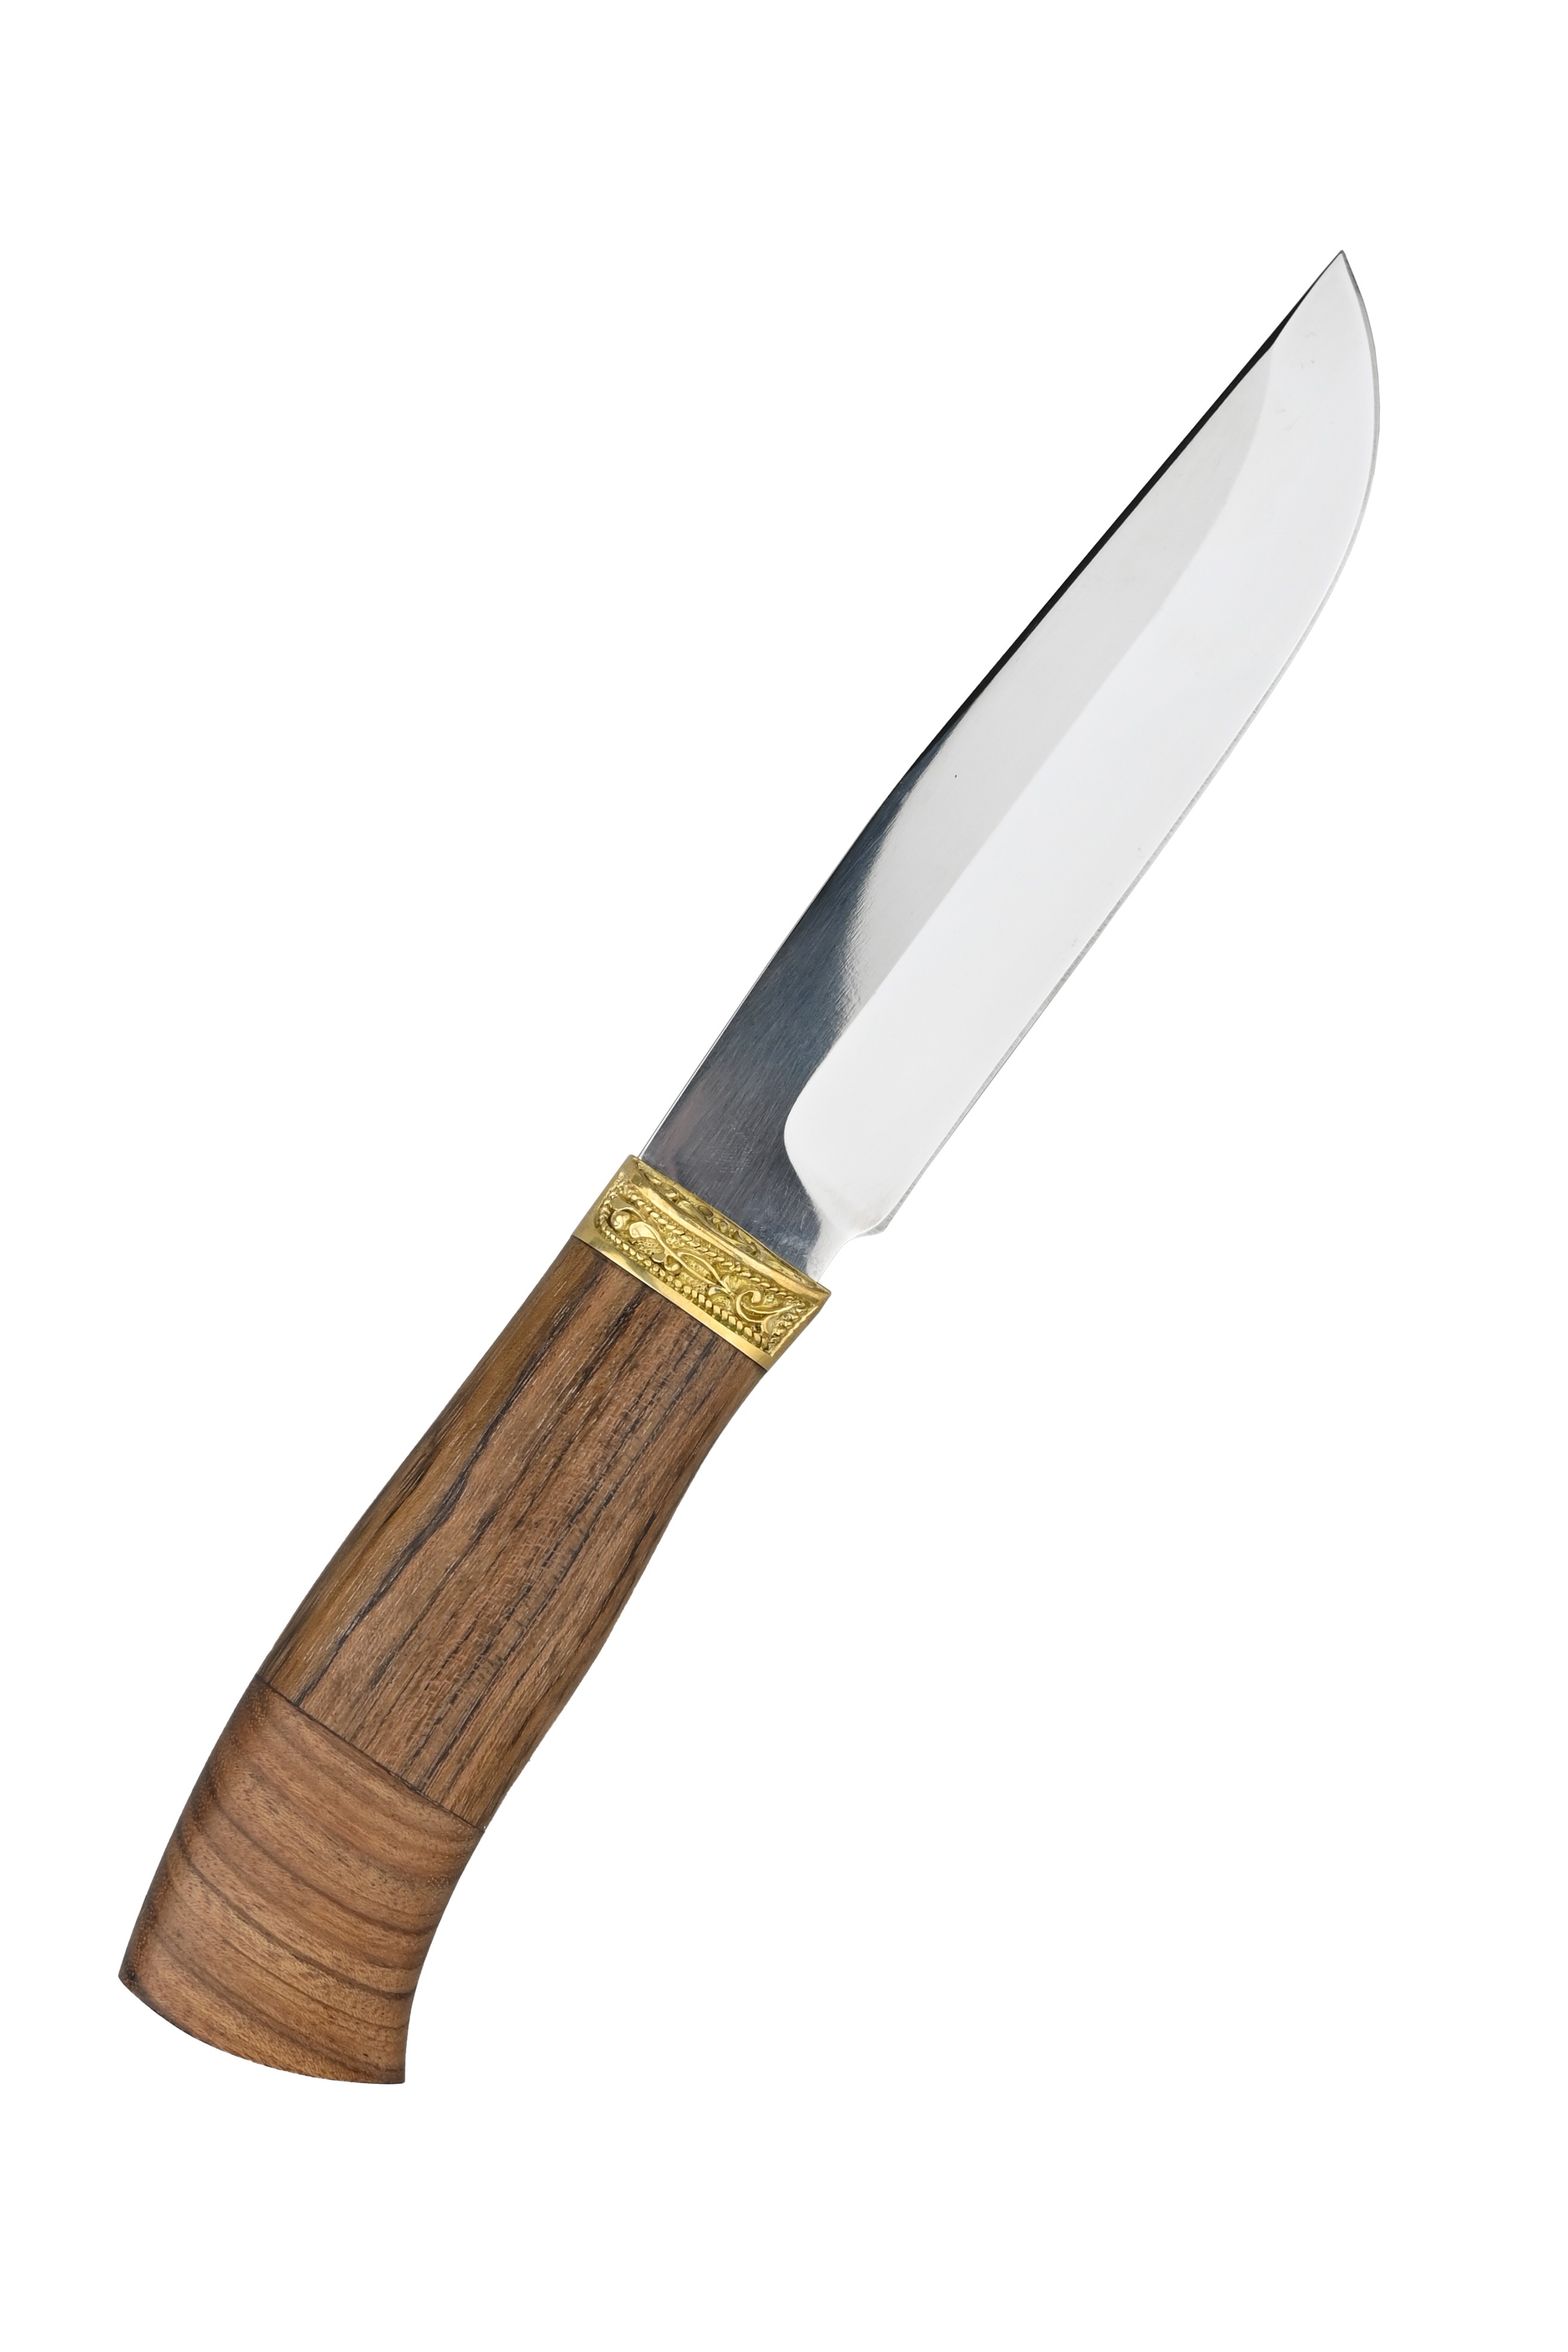 Нож ИП Семин Путник сталь 65х13 литье ценные породы дерева - фото 1